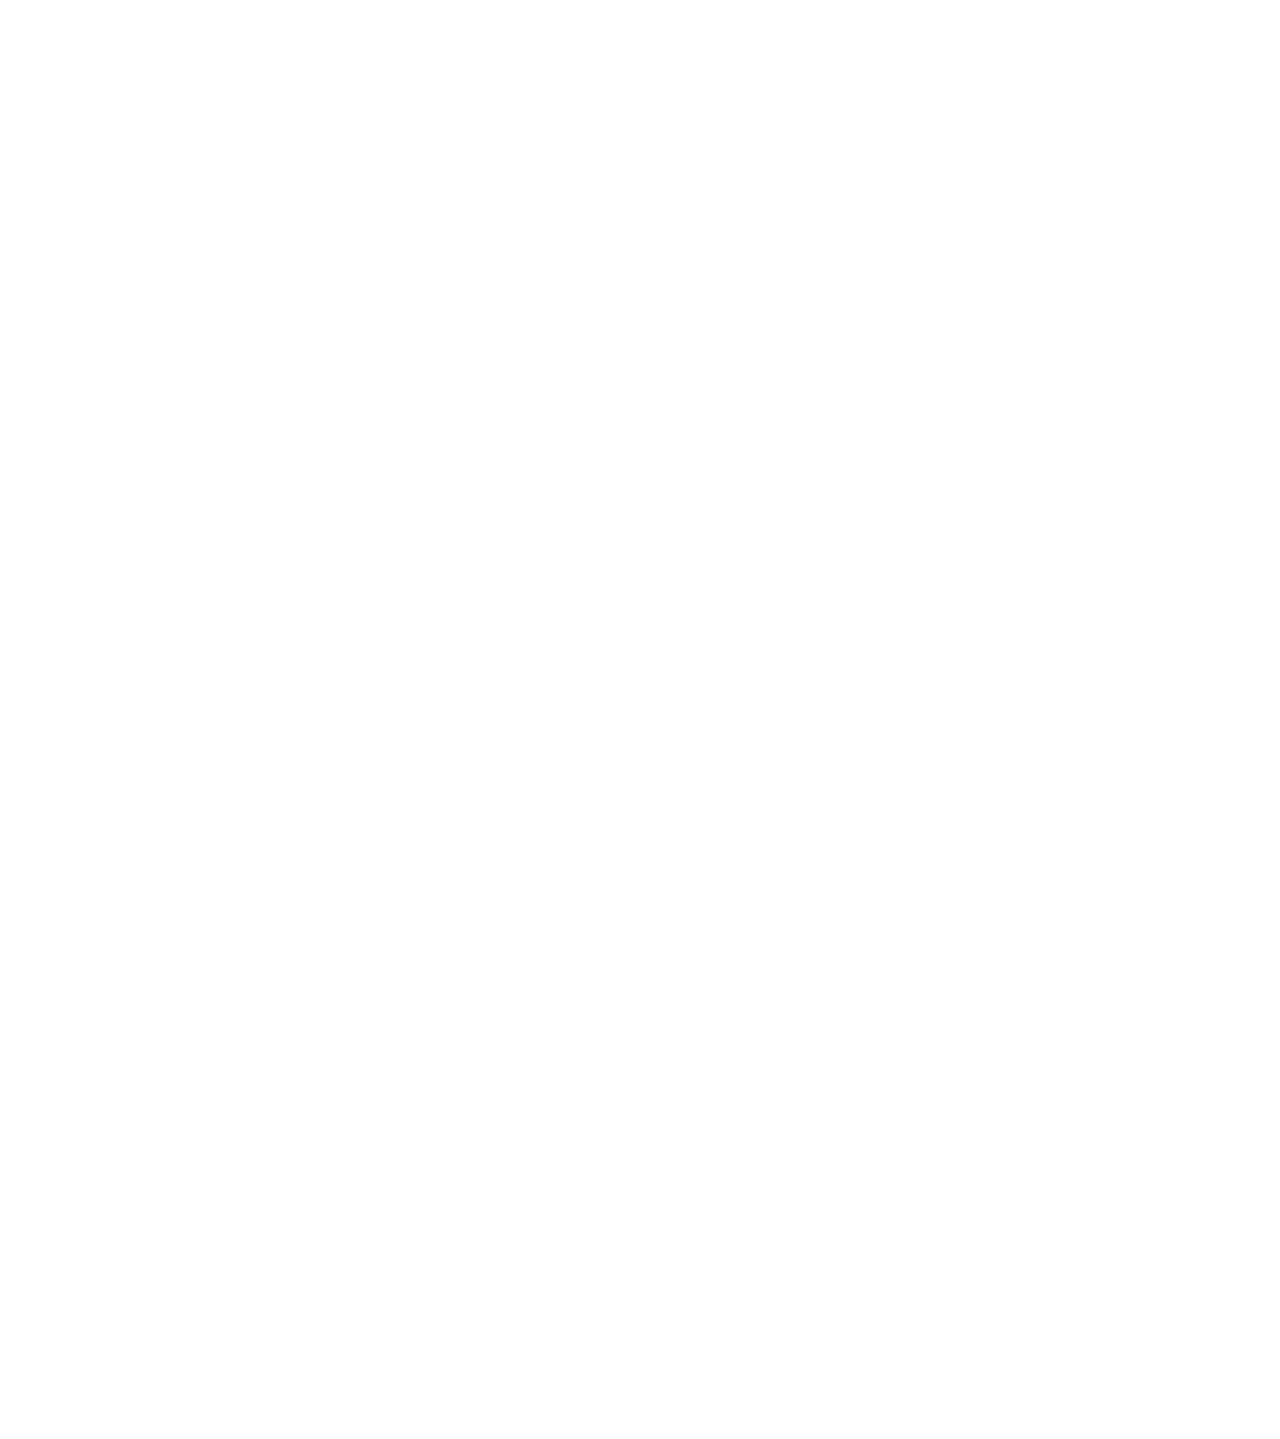 Wintruxx's logo